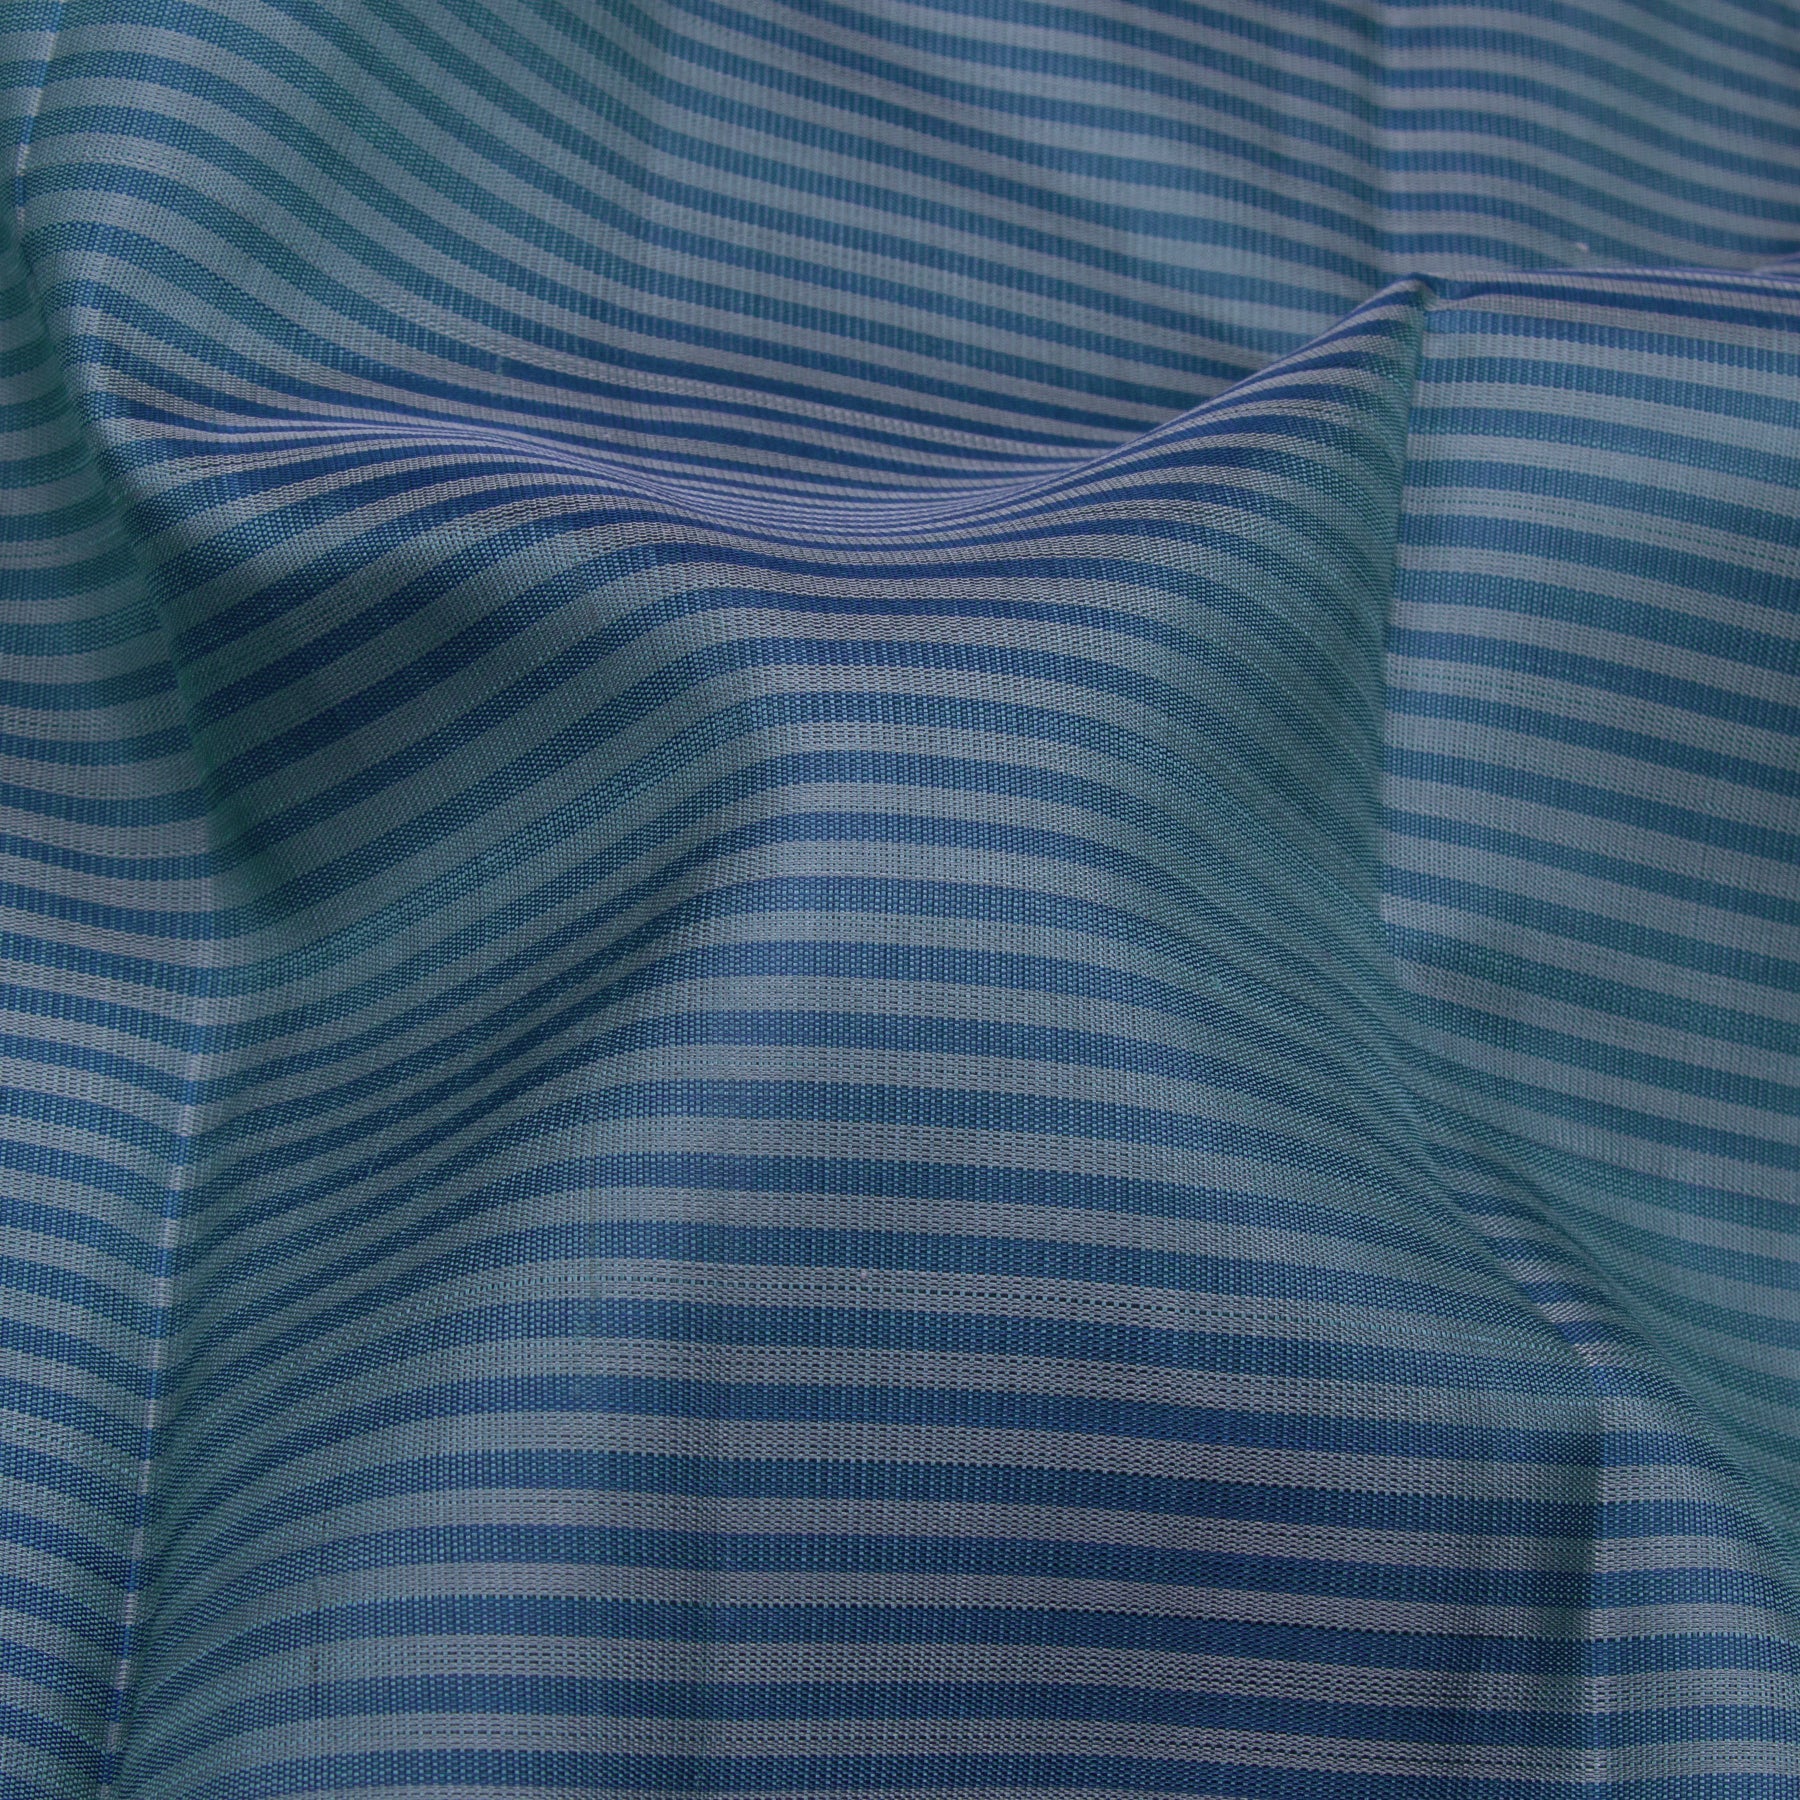 Kanakavalli Kanjivaram Silk Sari 23-599-HS001-12090 - Fabric View